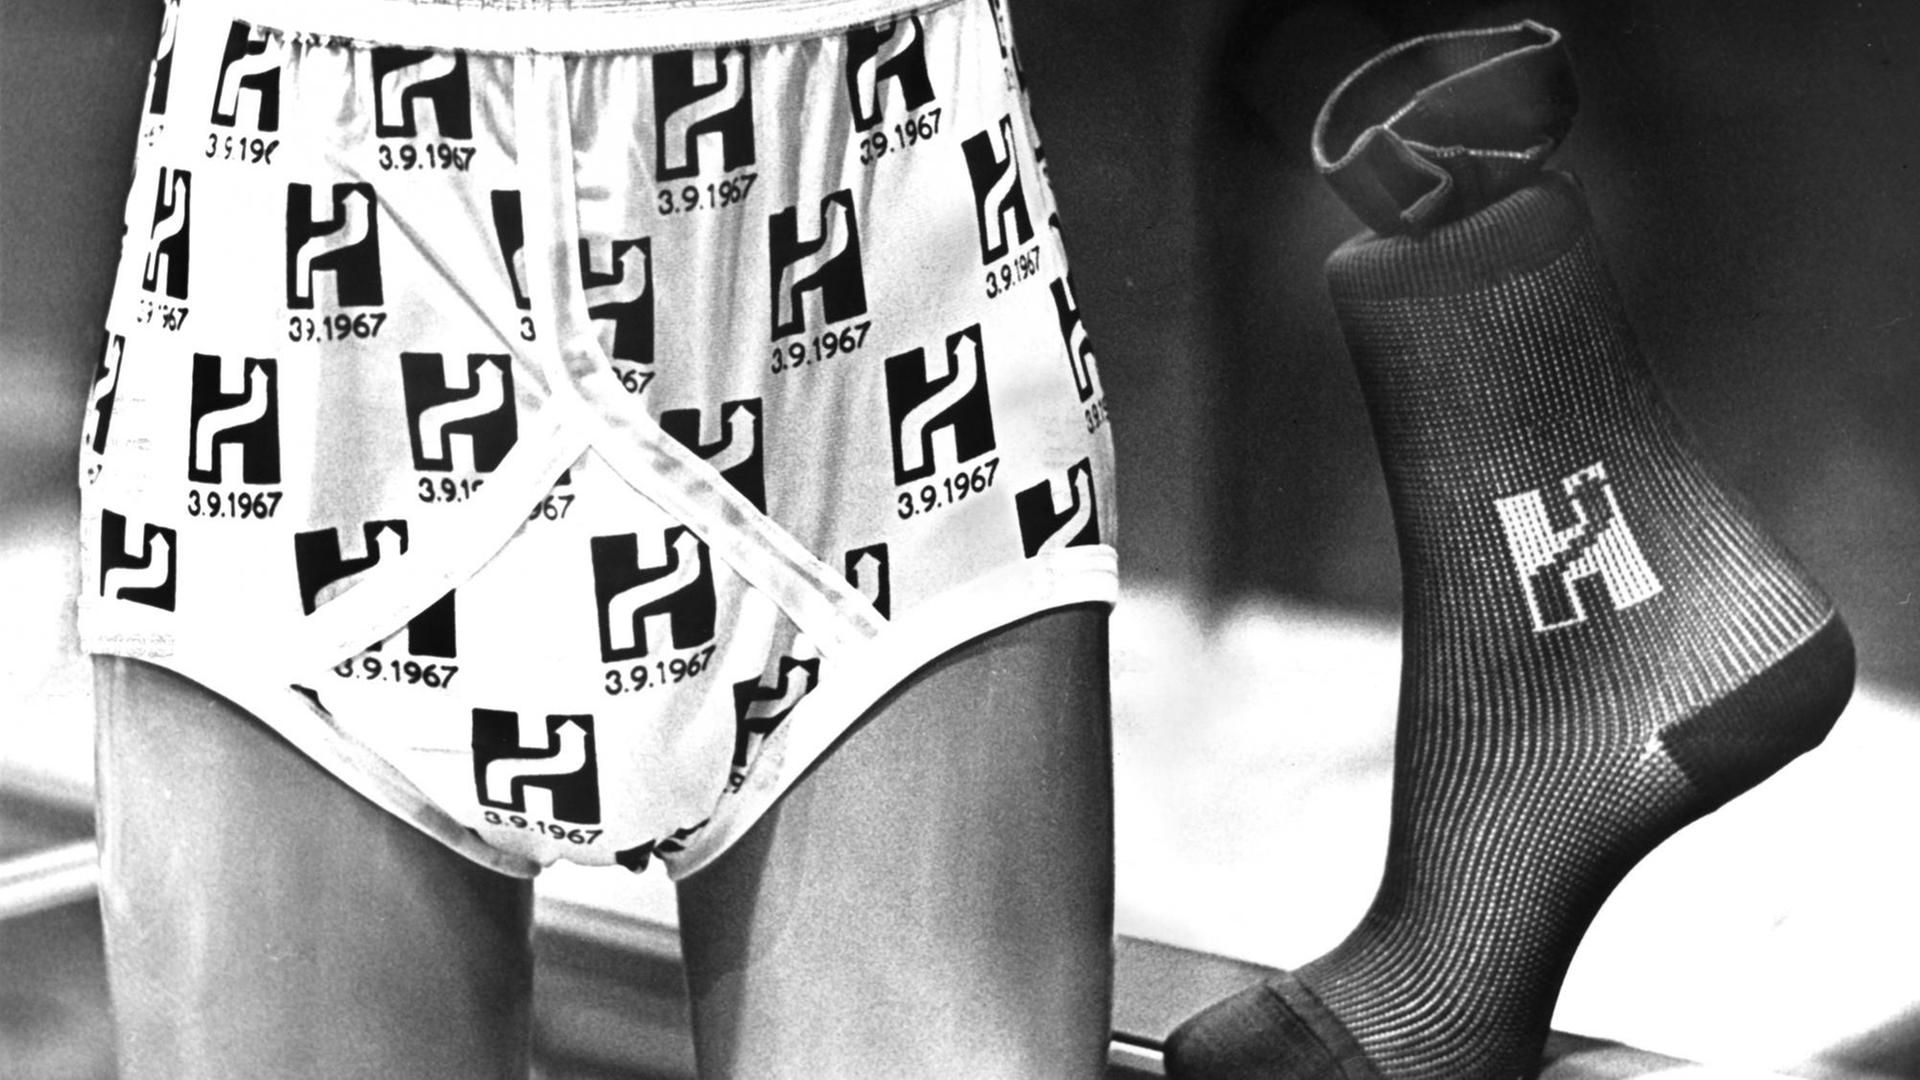 Socke und Unterhose sind mit dem Buchstaben H bedruckt, in dem sich ein Pfeil befindet. Das H steht für höger = rechts. Die Umstellung erfolgte am Sonntag, den 03.09.1967.